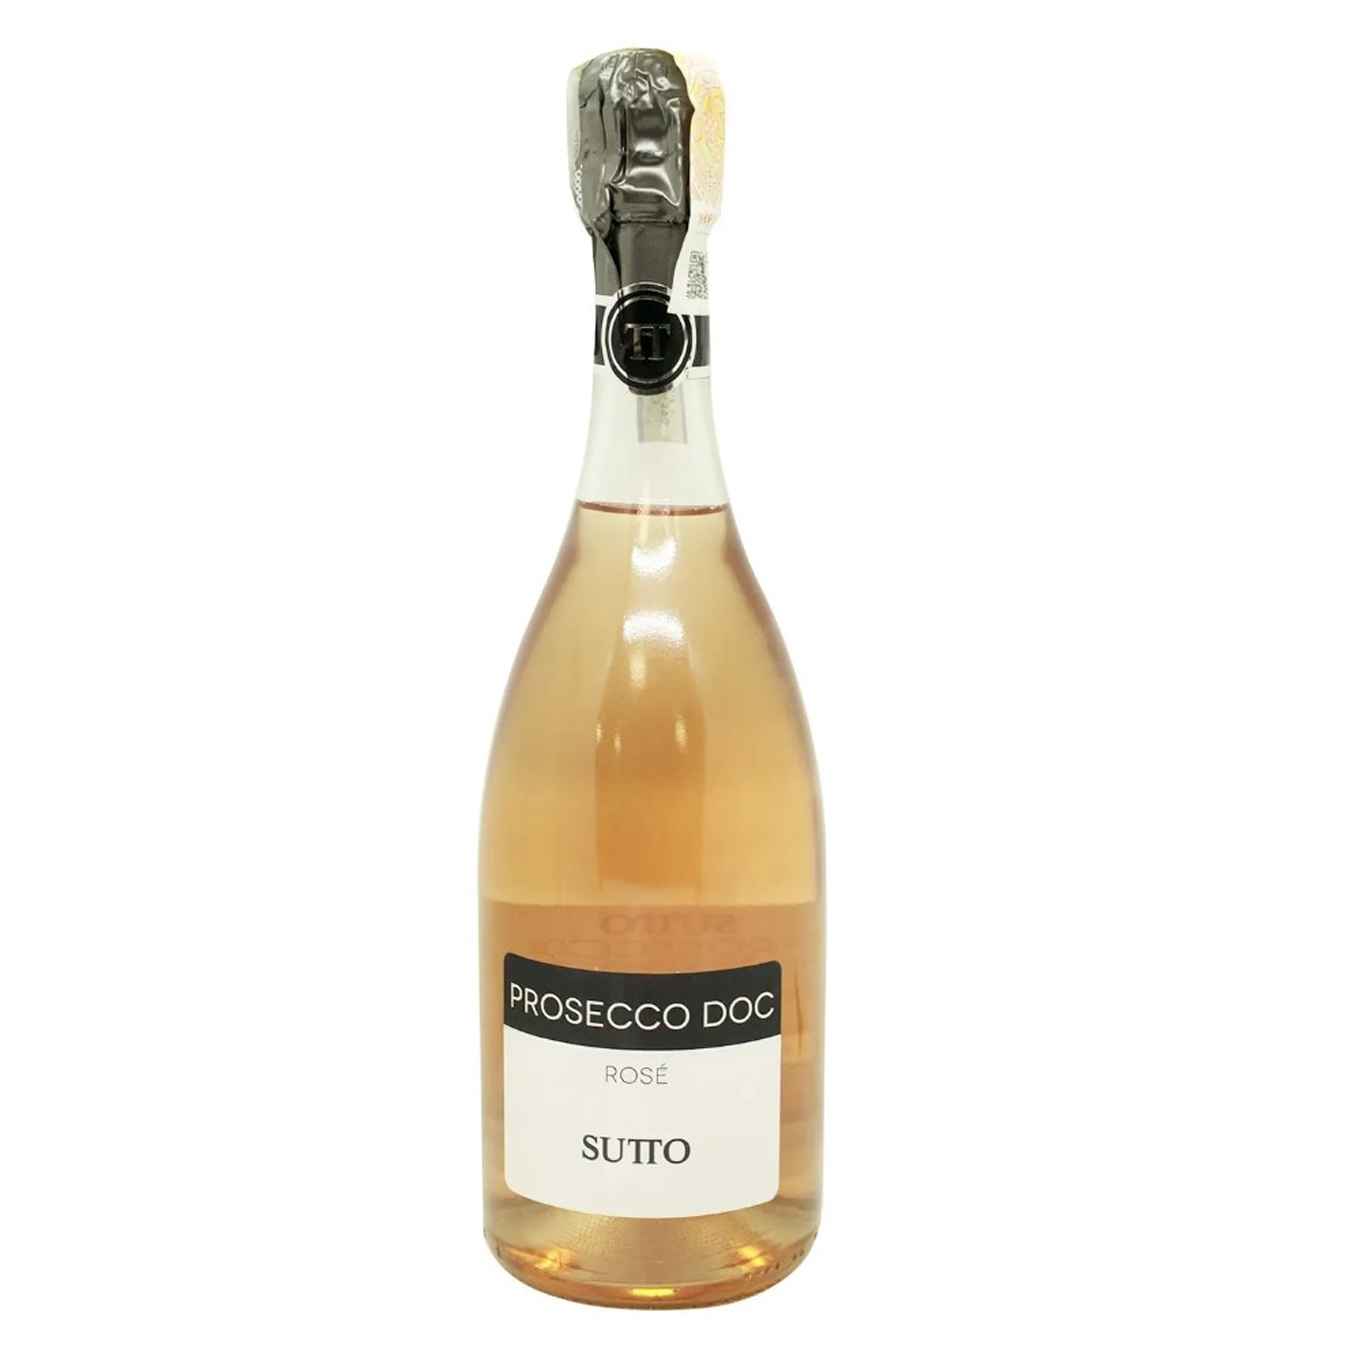 Sutto Prosecco Melisimato rose brut Sparkling wine 11% 0.75l